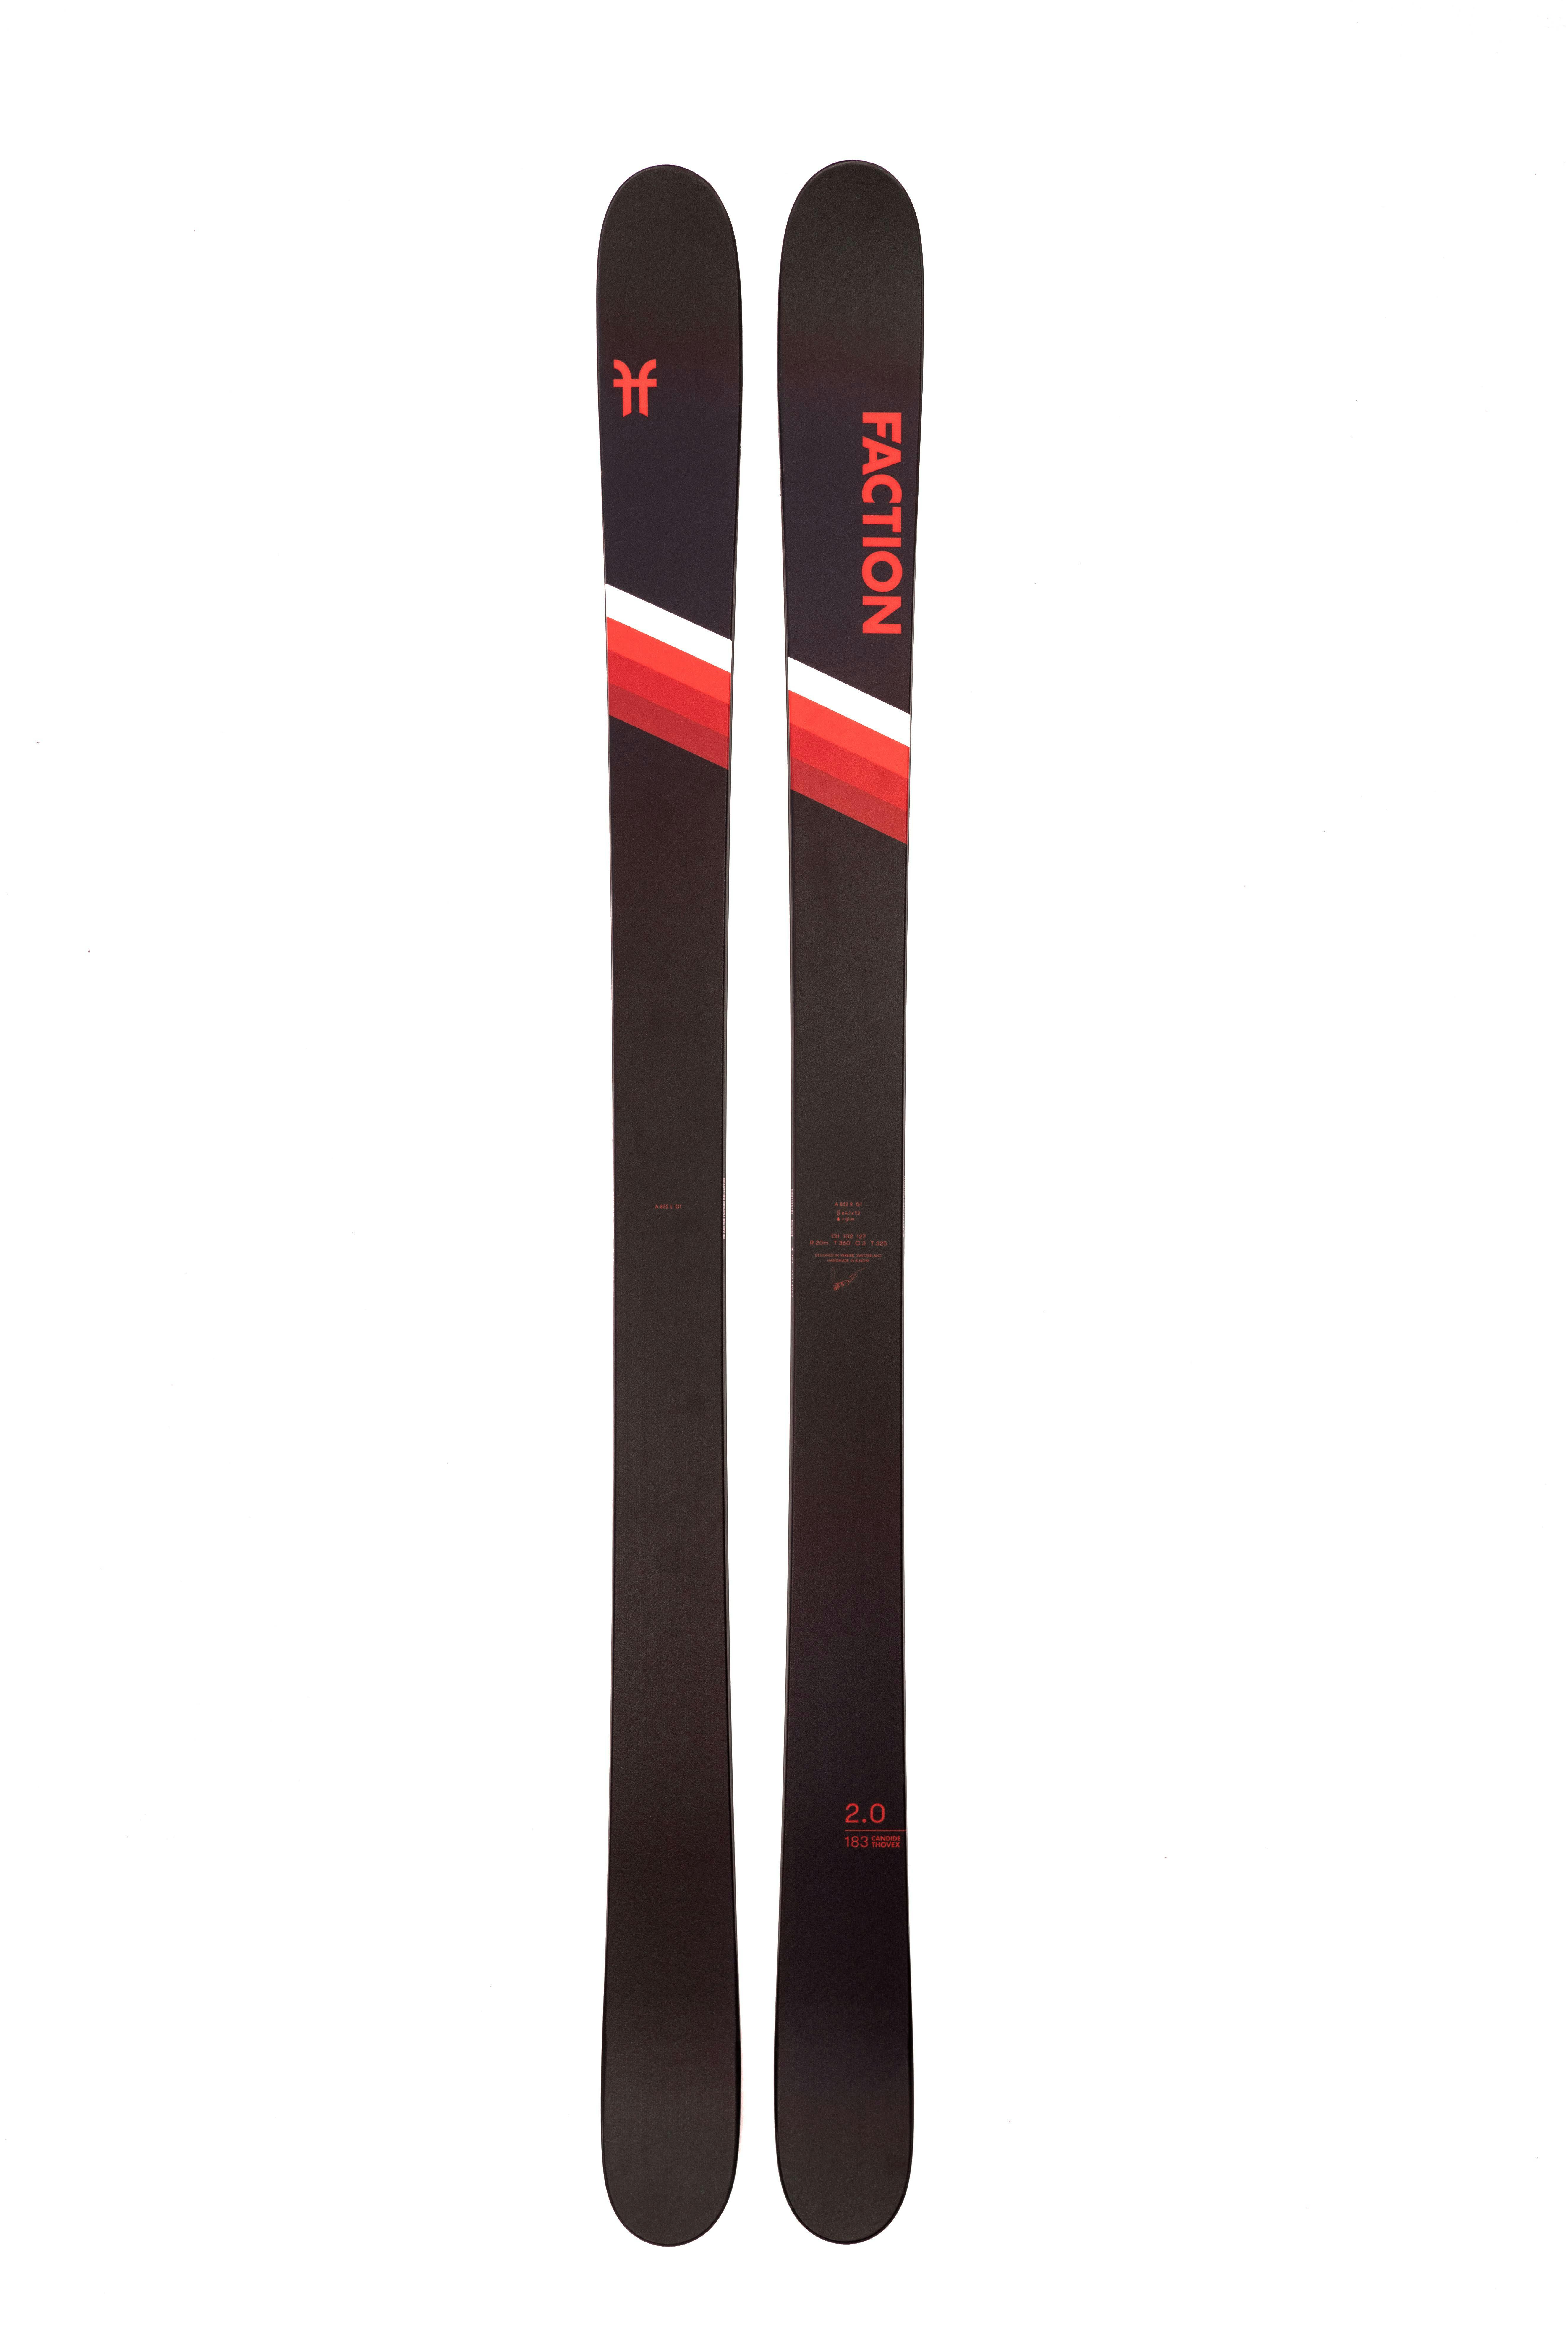 Faction Ski Candide 2.0 Skis Black